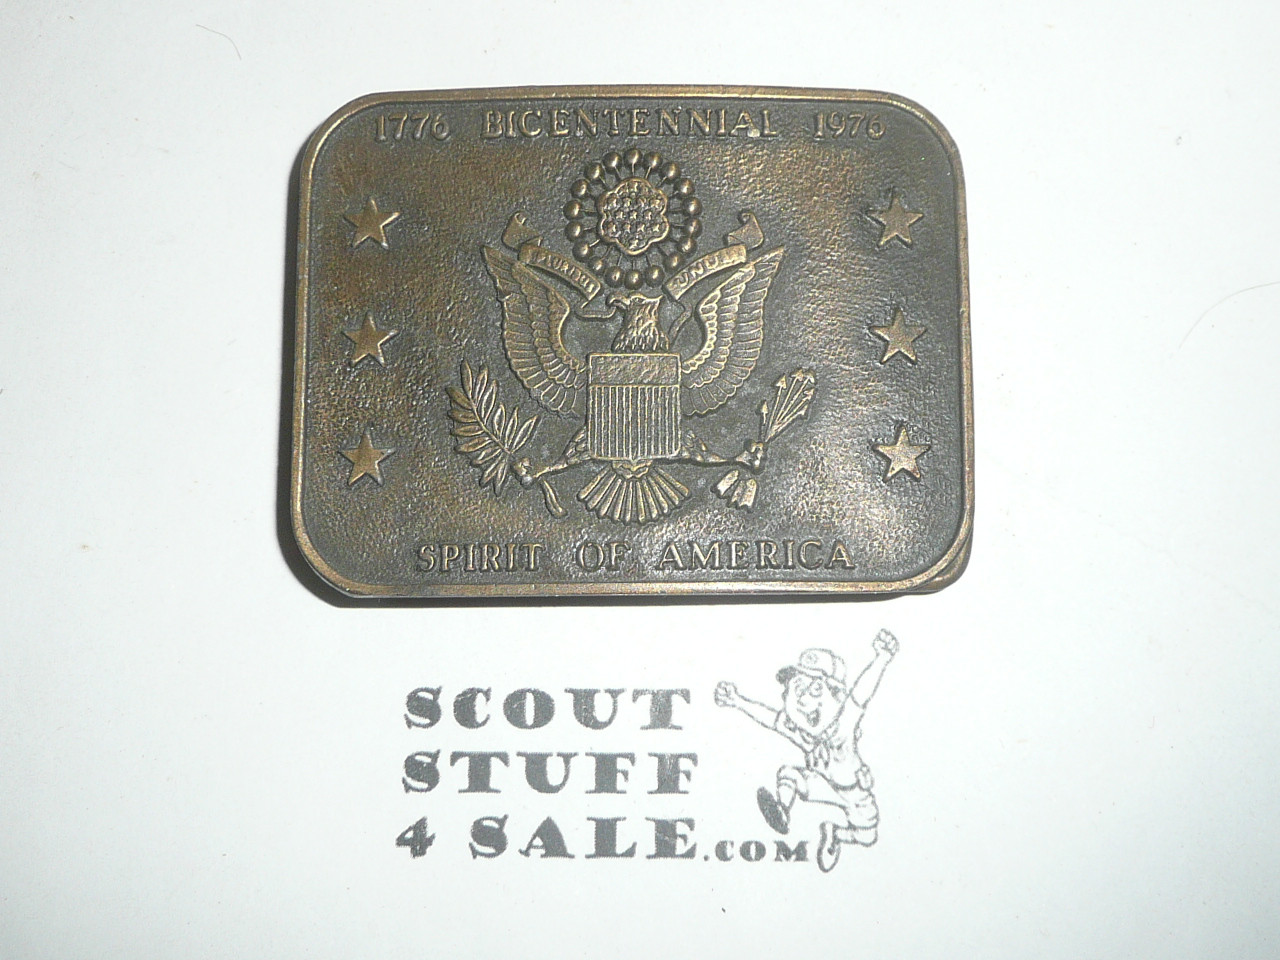 USA Bicentennial Bronze Belt Buckle, Spirit of America